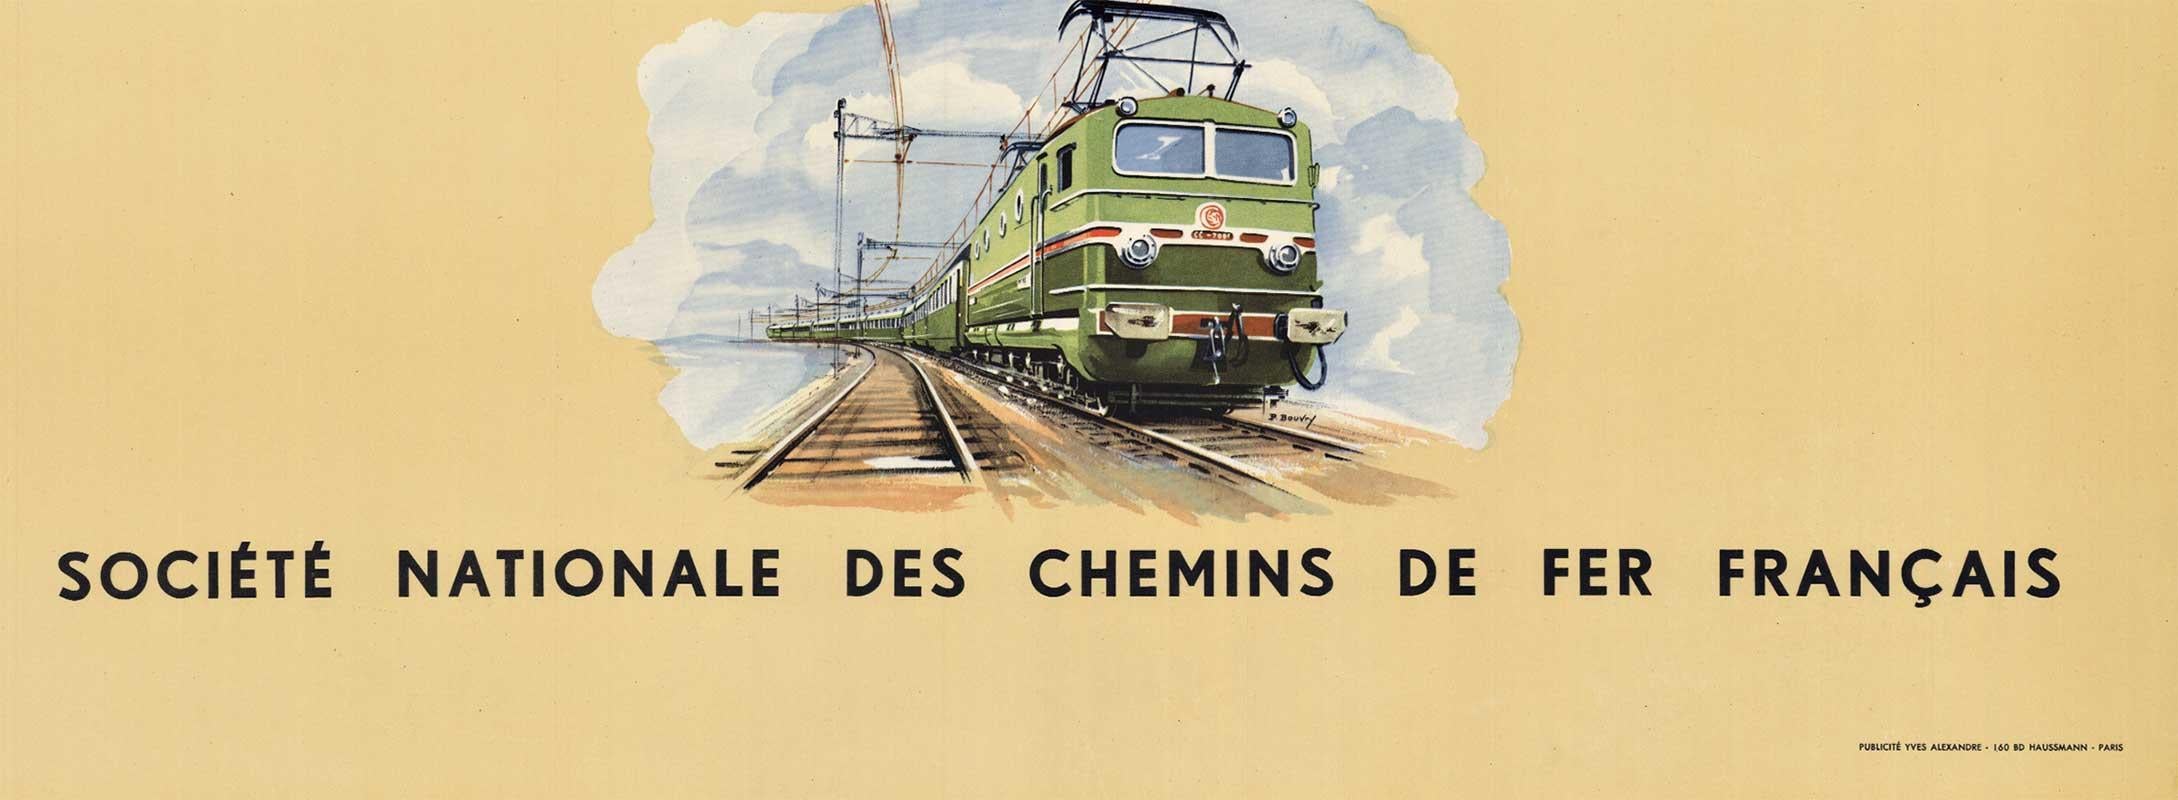 Original französisches Vintage-Reiseplakat:  FRANKREICH, Societe Nationale des Chemins de Fer Francais.  Gedruckt in Frankreich für und von den französischen Staatsbahnen   Originalposter mit Leinenrücken, rahmenfertig.   Beachten Sie, dass unser